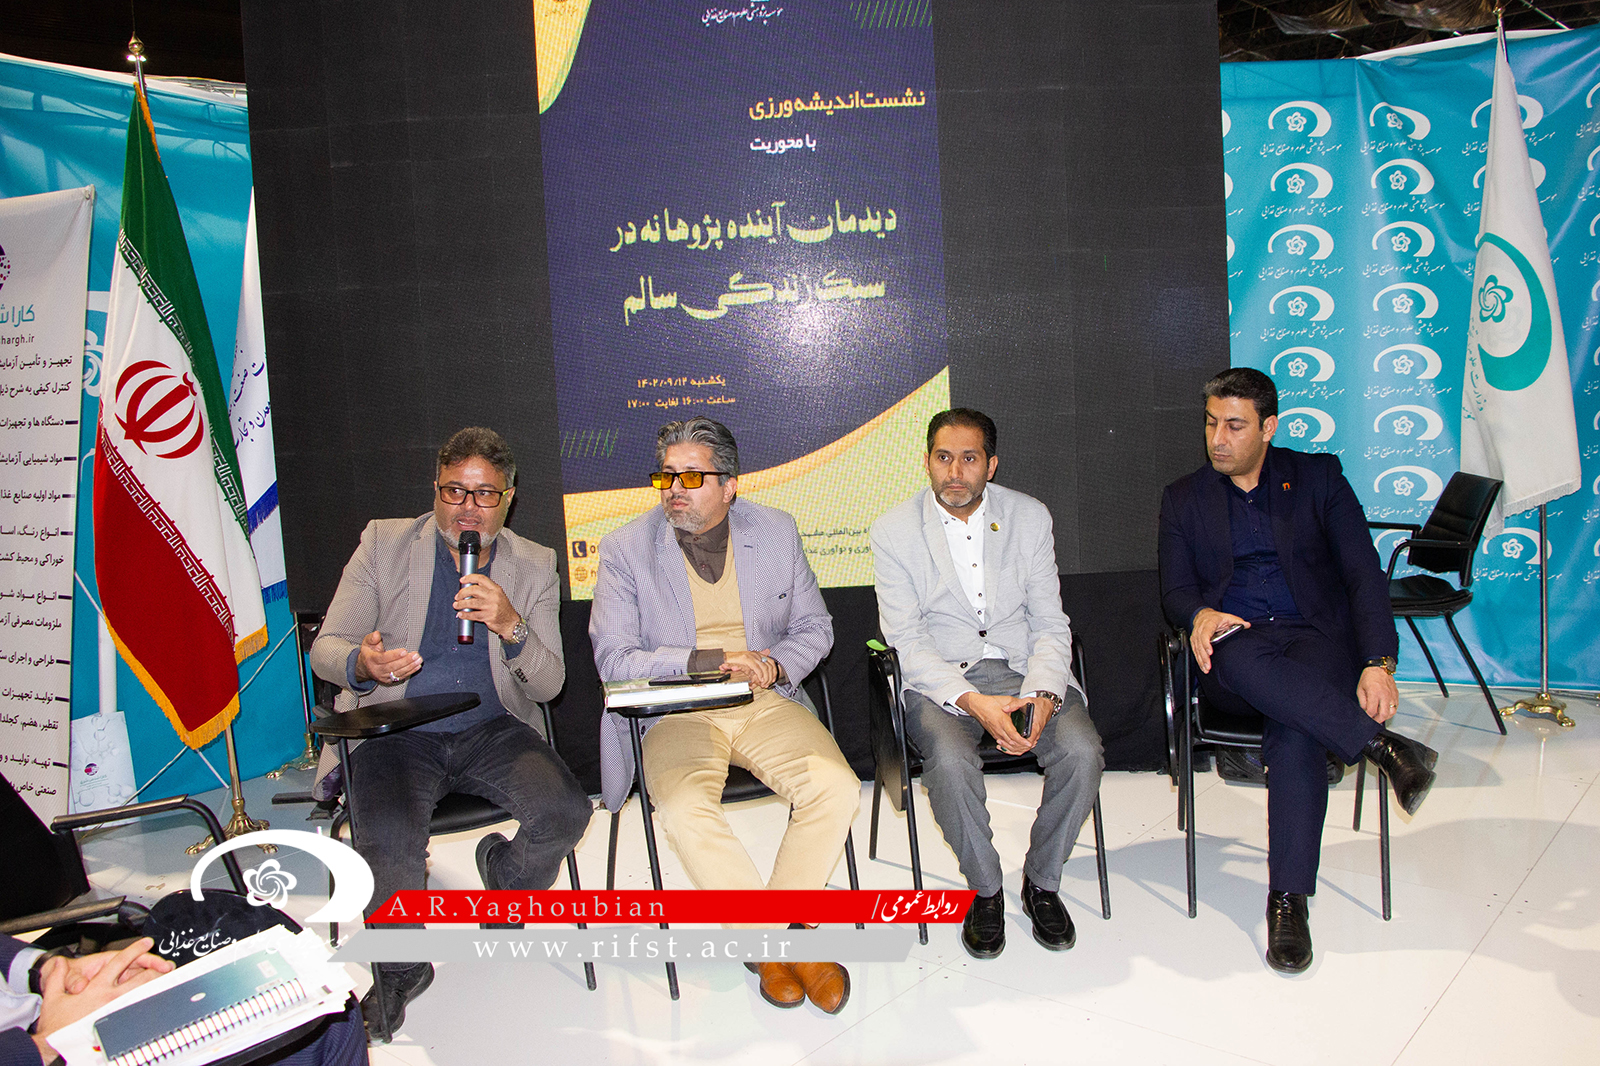 گزارش تصویری آخرین روز نمایشگاه هفته پژوهش استان خراسان رضوی